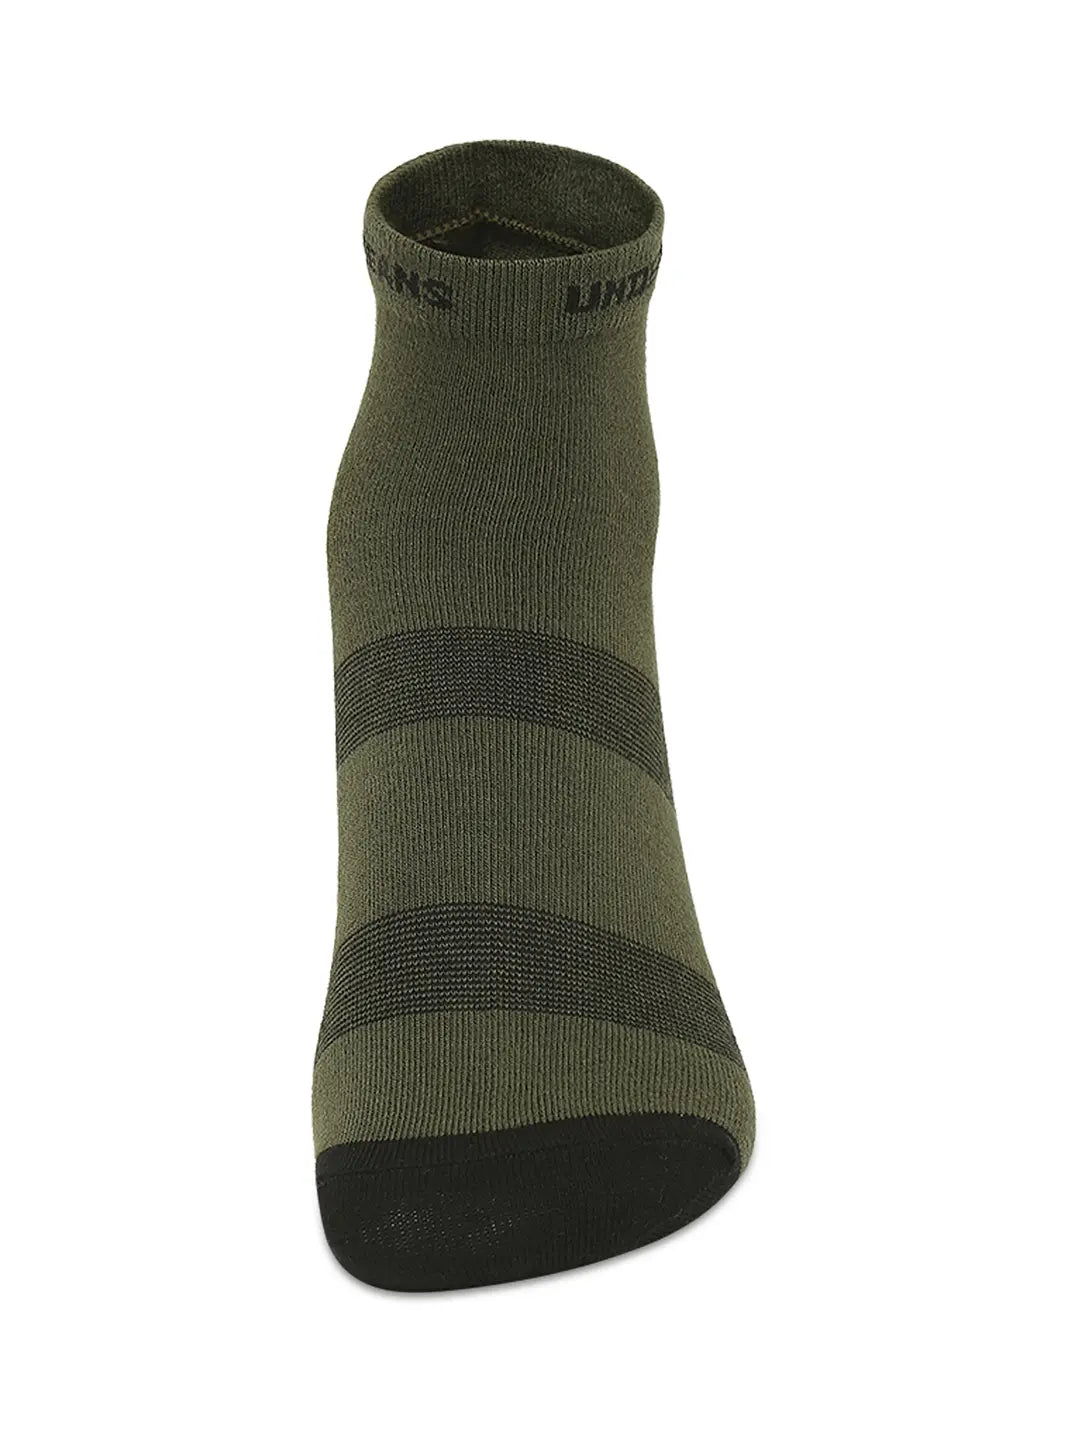 Men Premium White & Olive Ankle Length Socks - Pack Of 2- Underjeans by Spykar